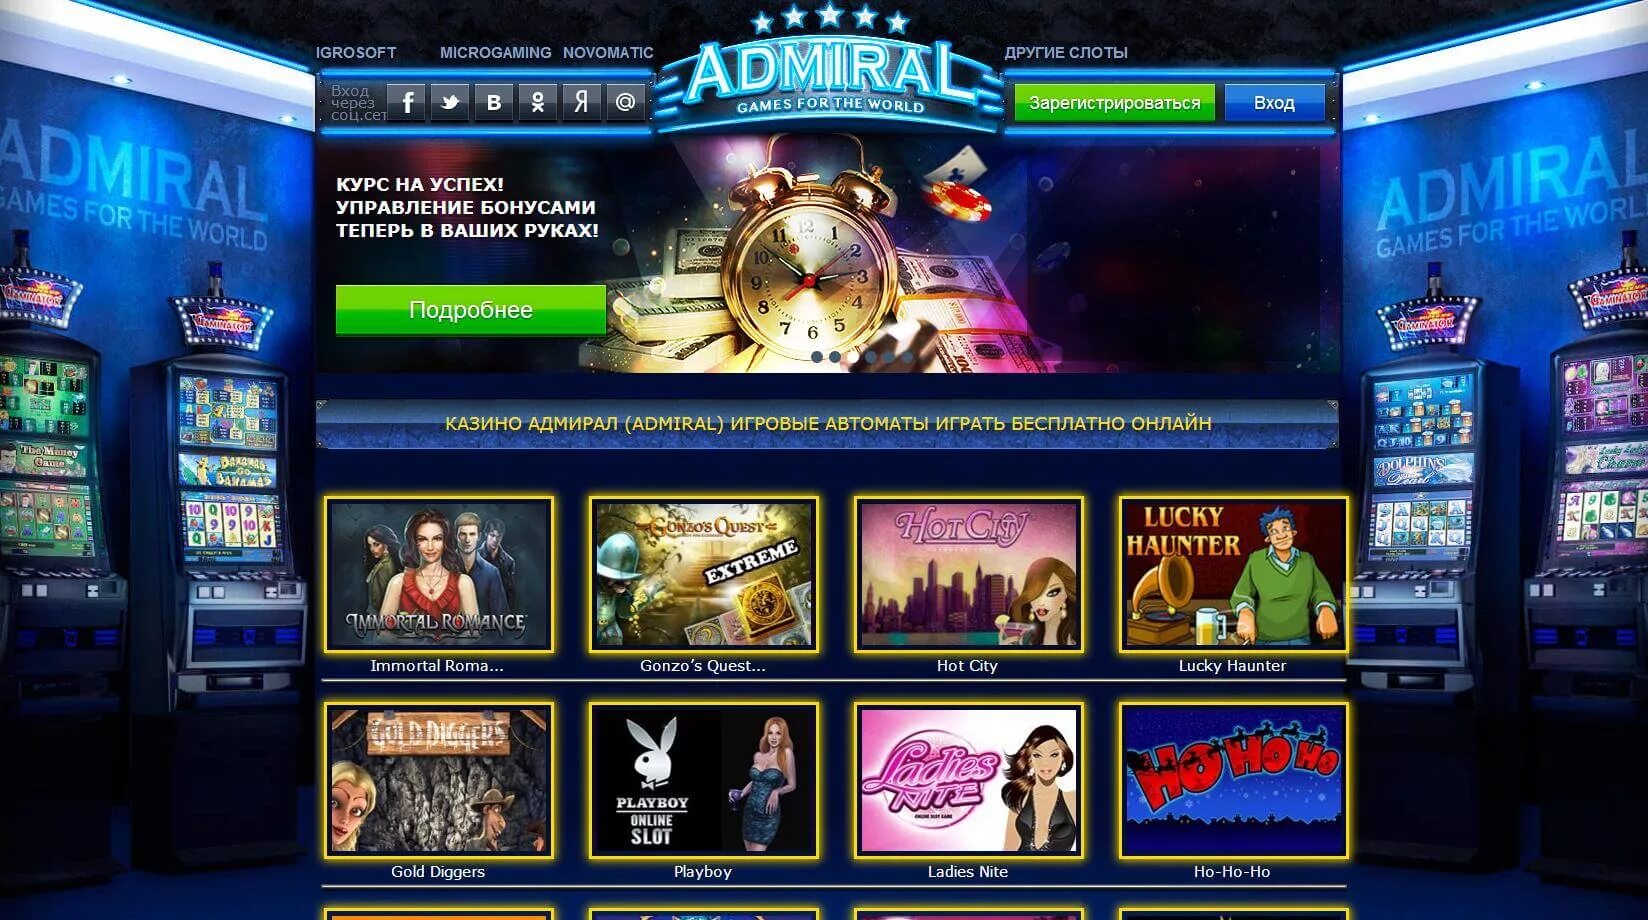 Адмирал сайт admiralx casino. Интернет казино игровые аппараты Admiral. Адмирал казино игровые автоматы. Игровые автоматы Адмирал 777 на деньги. Адмирал слот игровой автомат.